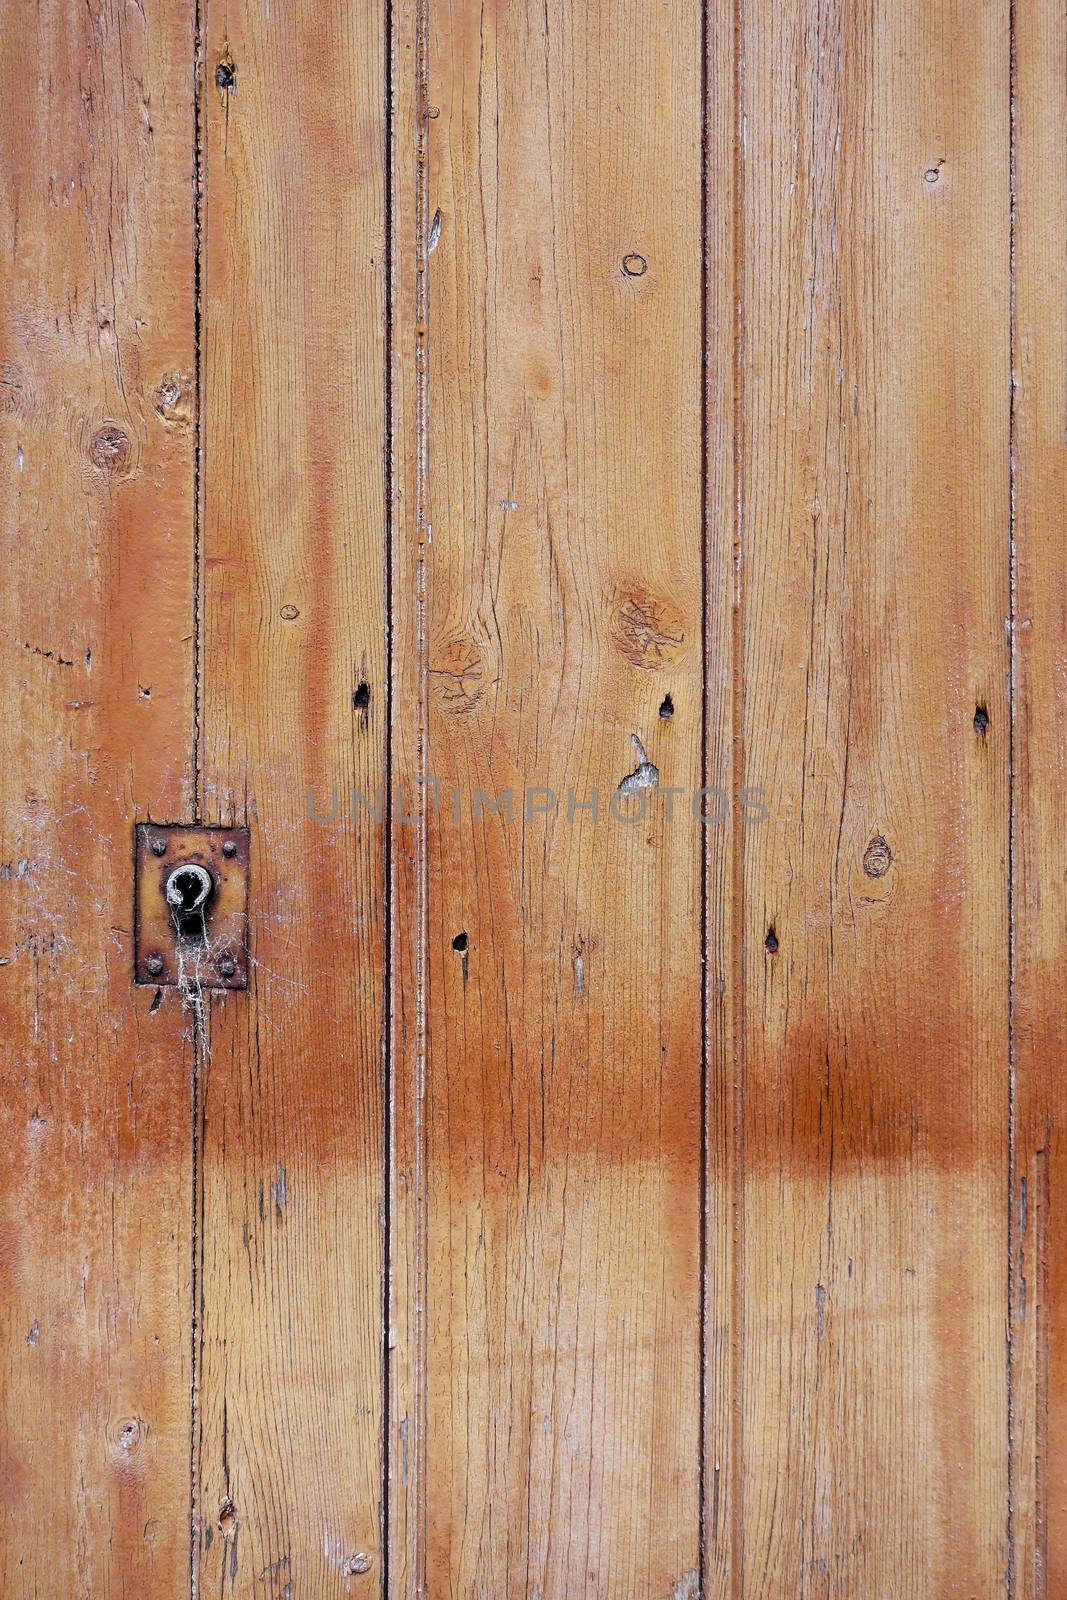 Rough wood door by daboost